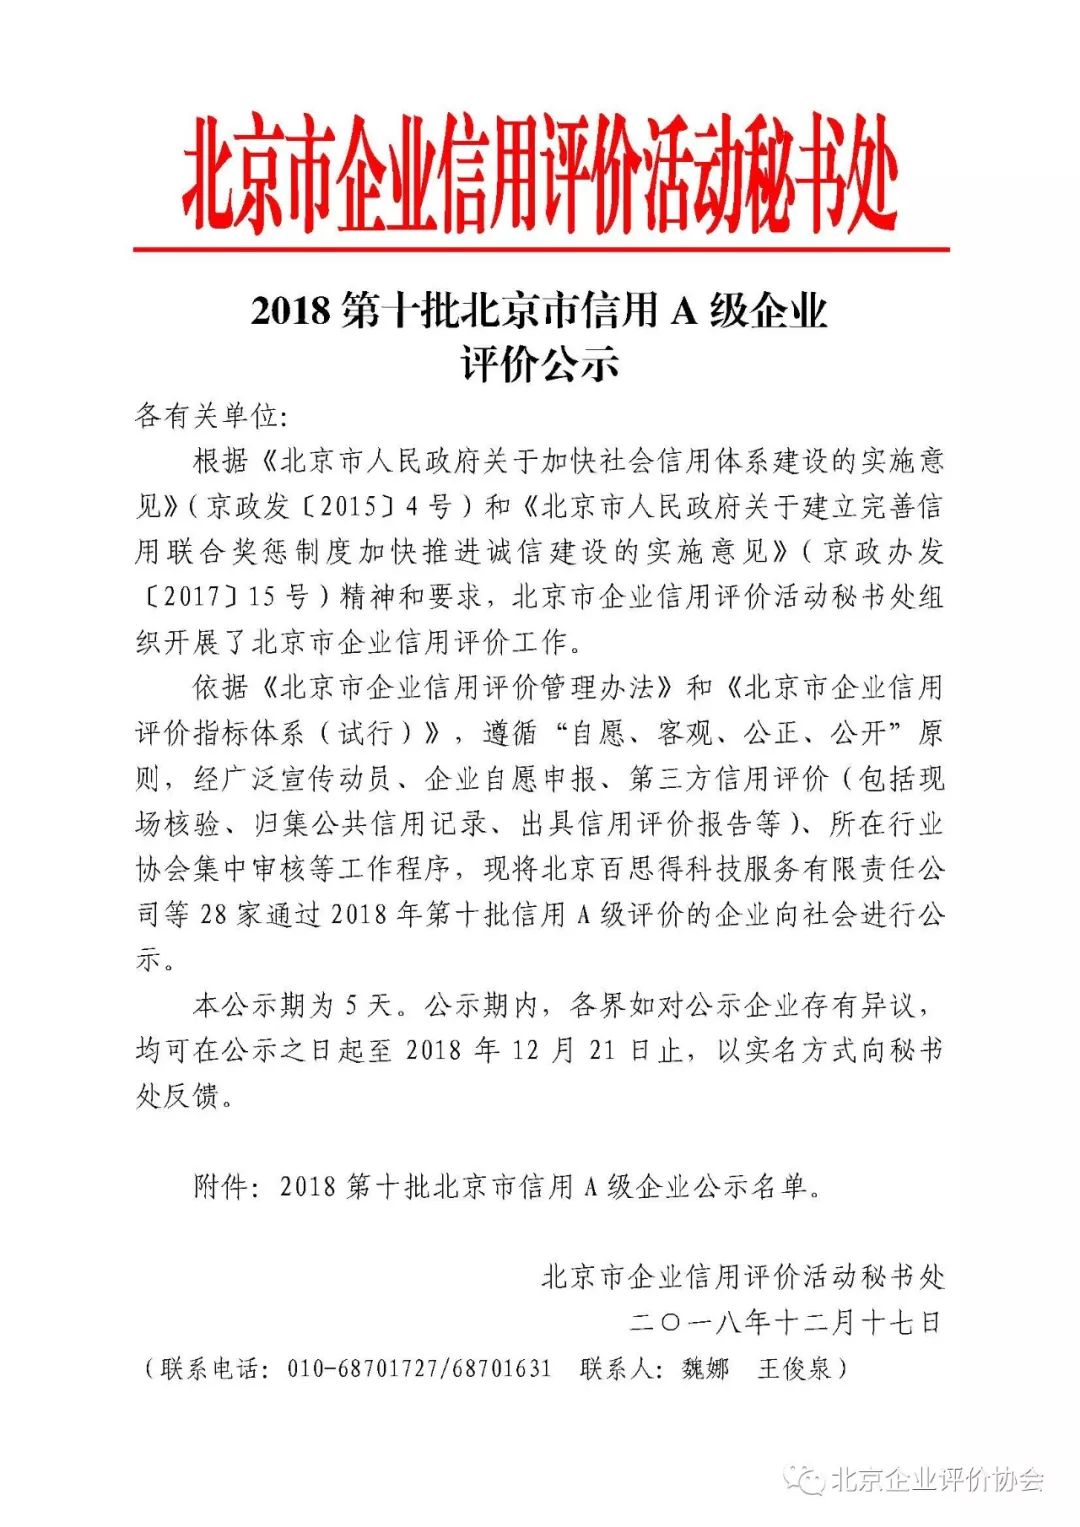 2018第十批北京市信用a级企业评价公示